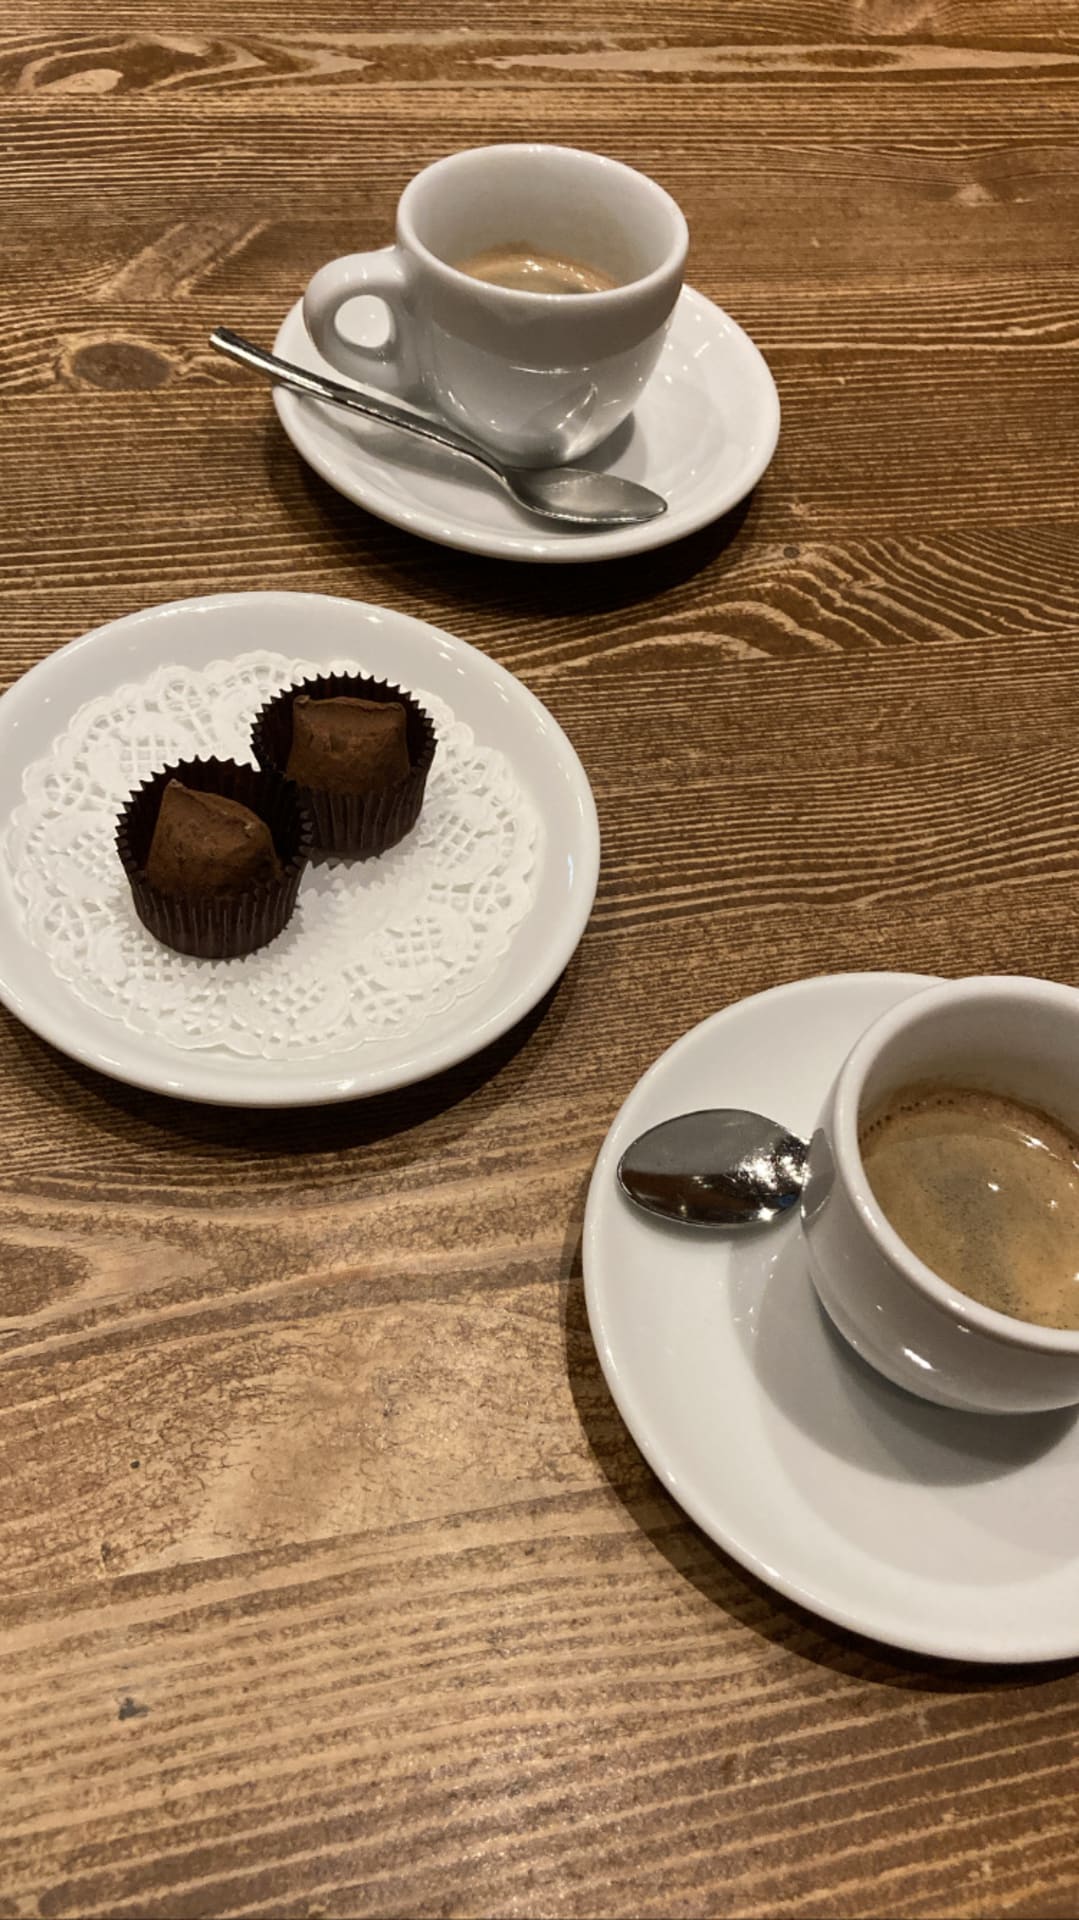 Coffee & chocolate truffle